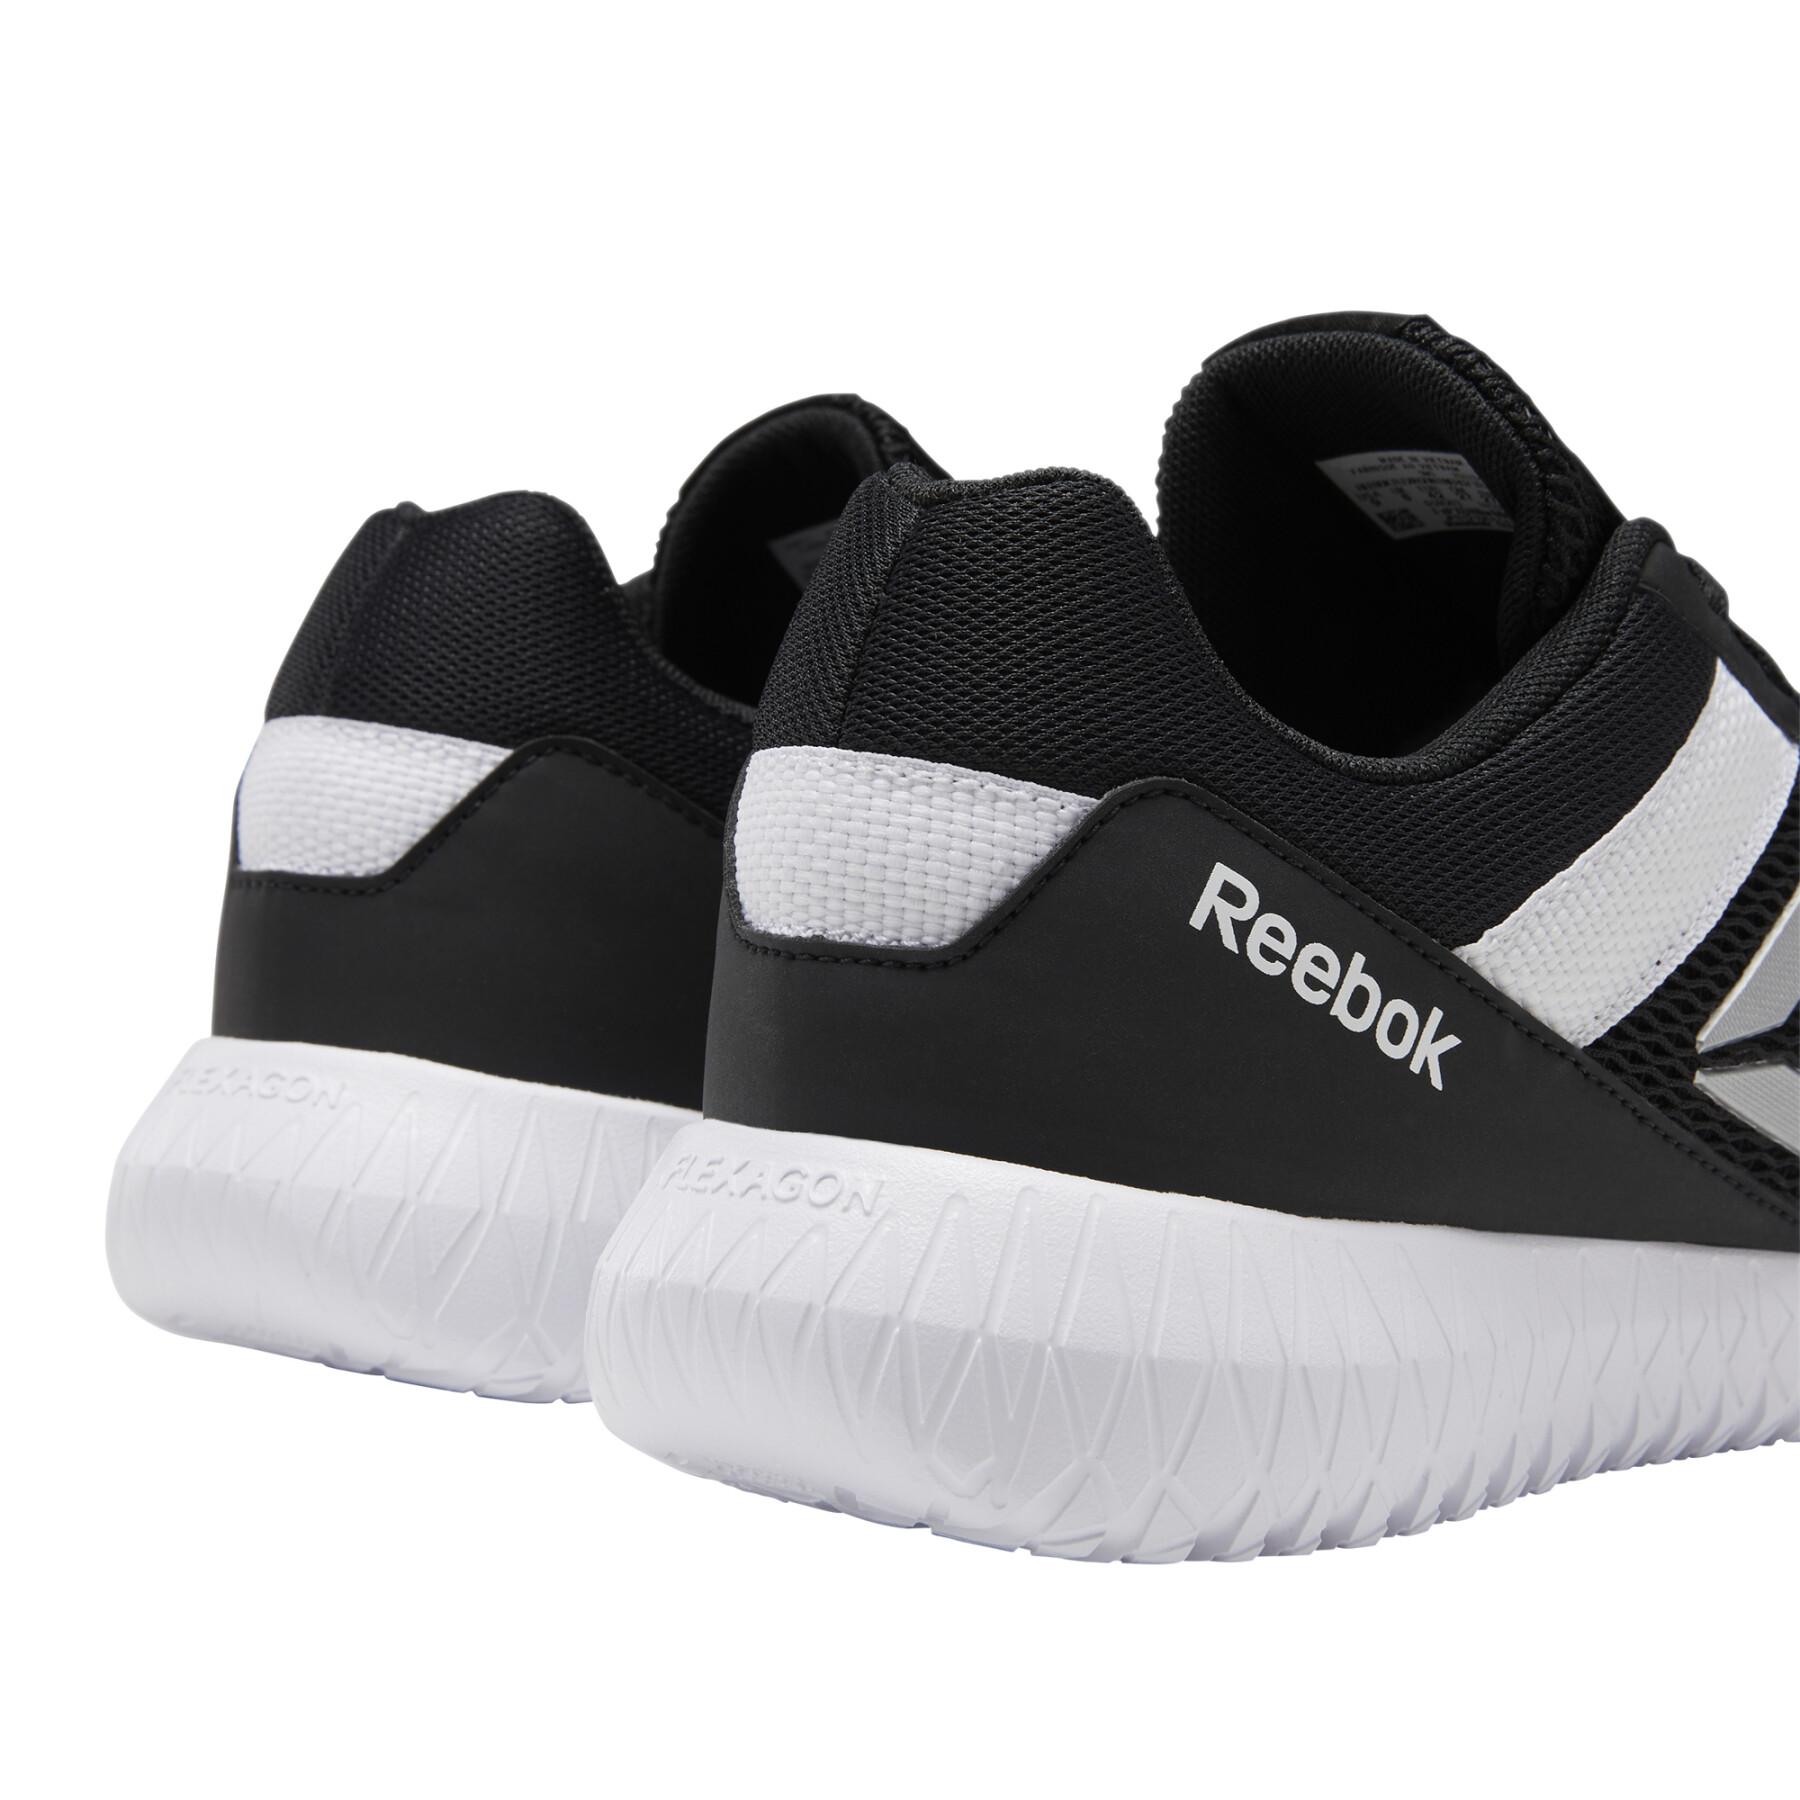 Zapatos Reebok Flexagon Energy